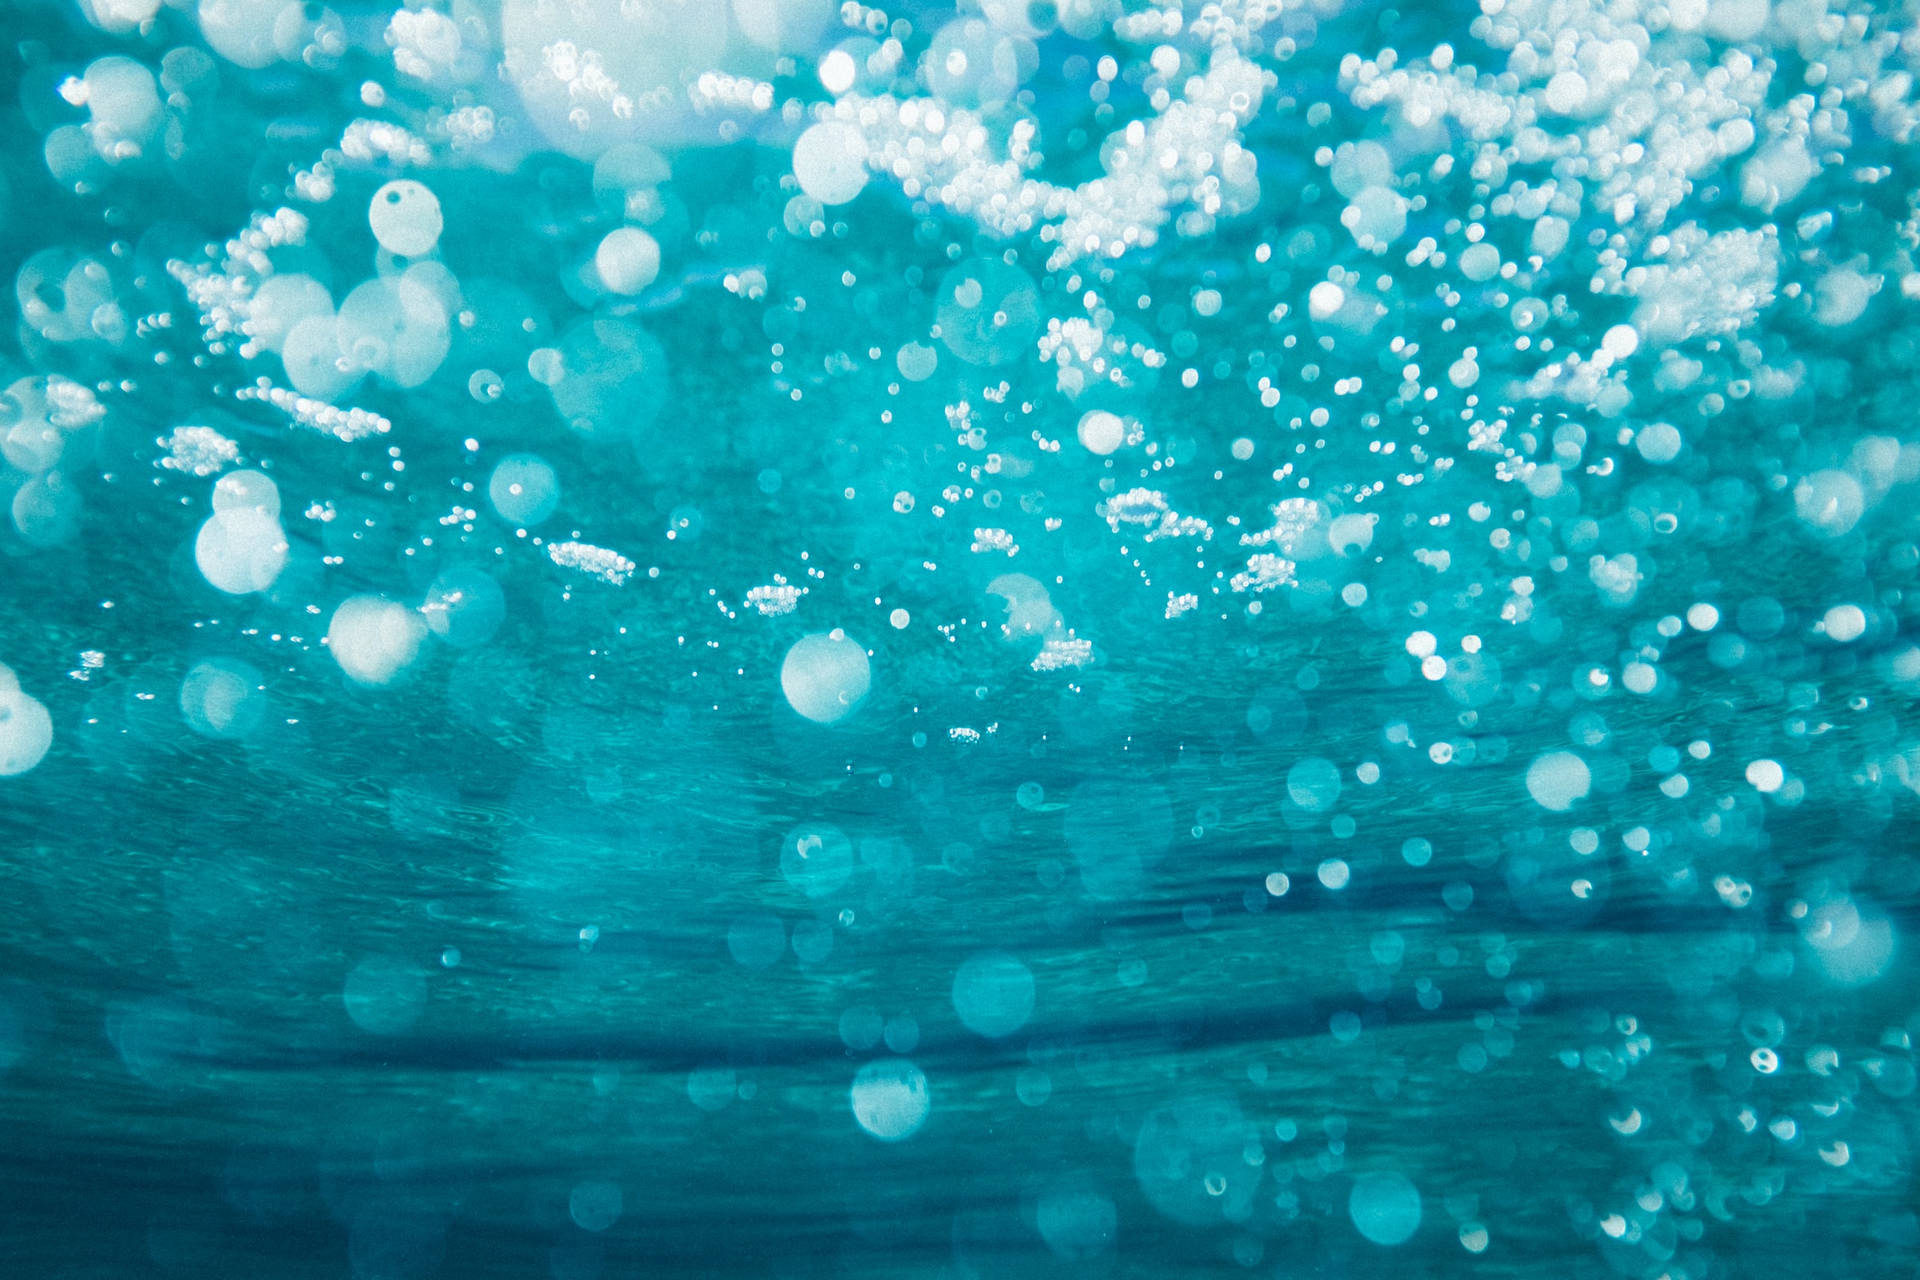 Bubbles In Ocean Blue Waters Wallpaper